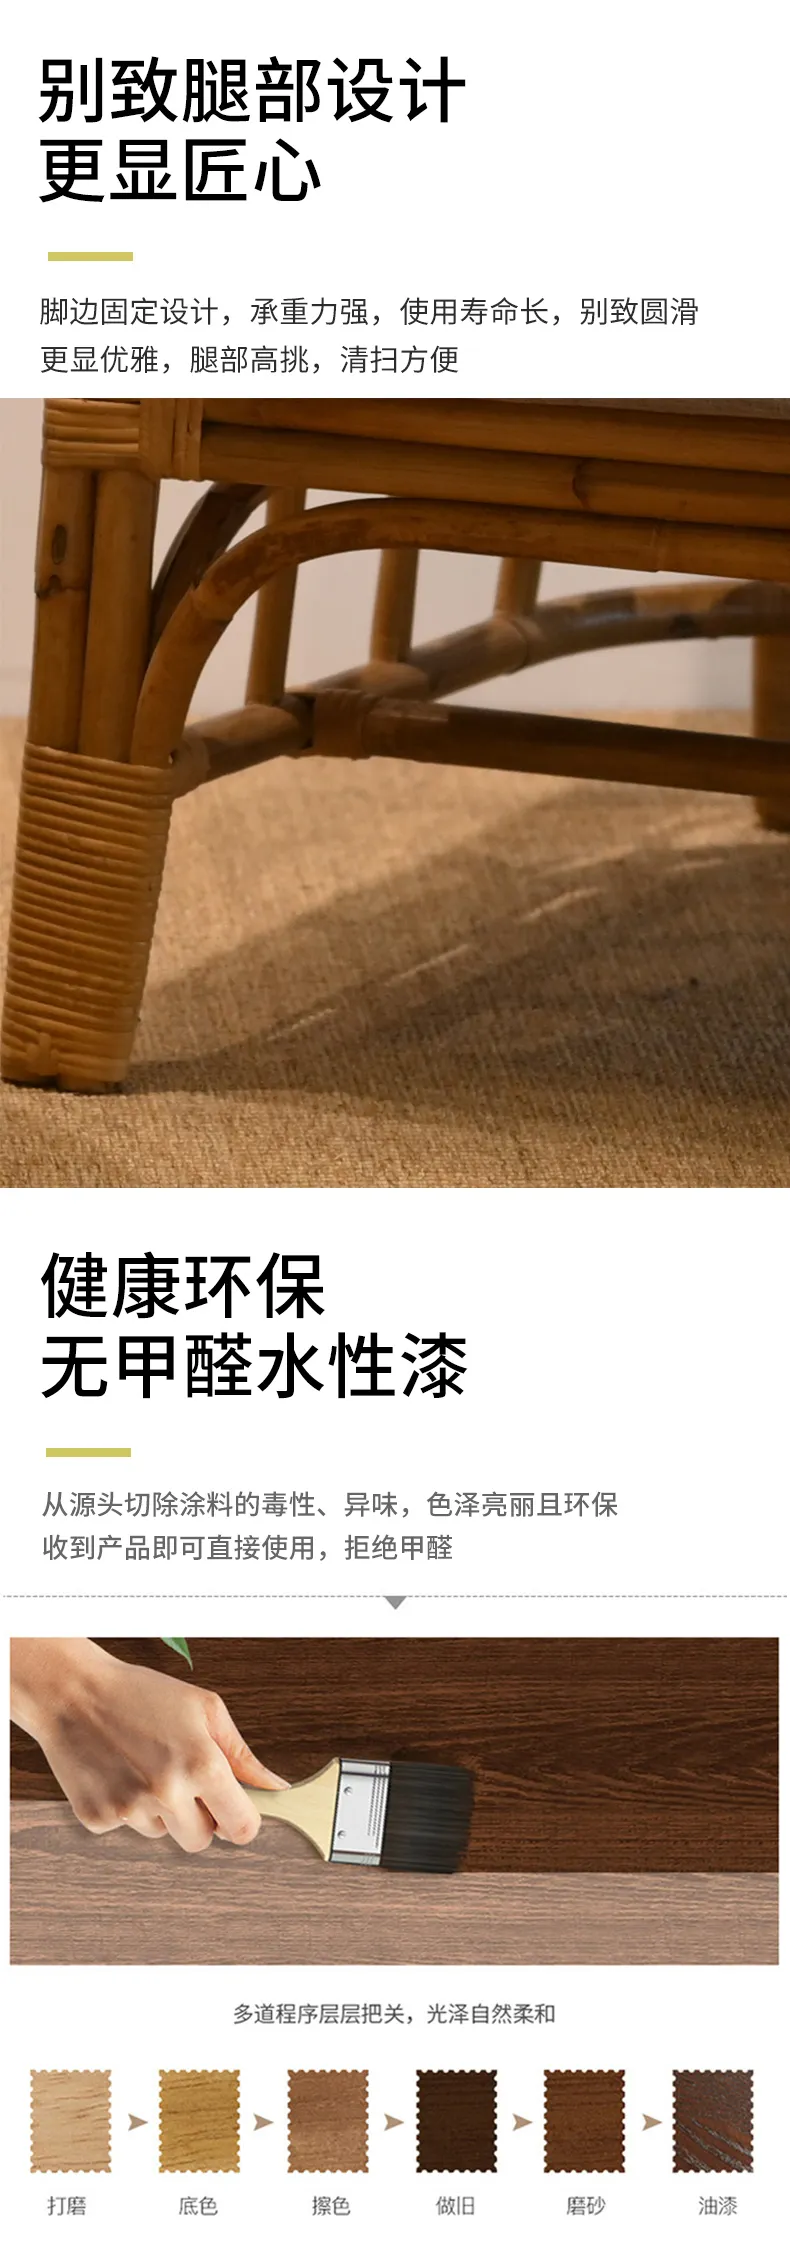 华松居 阳台藤椅系列椅子印尼进口玛瑙藤纯手工编织#欧式沙发椅(图7)